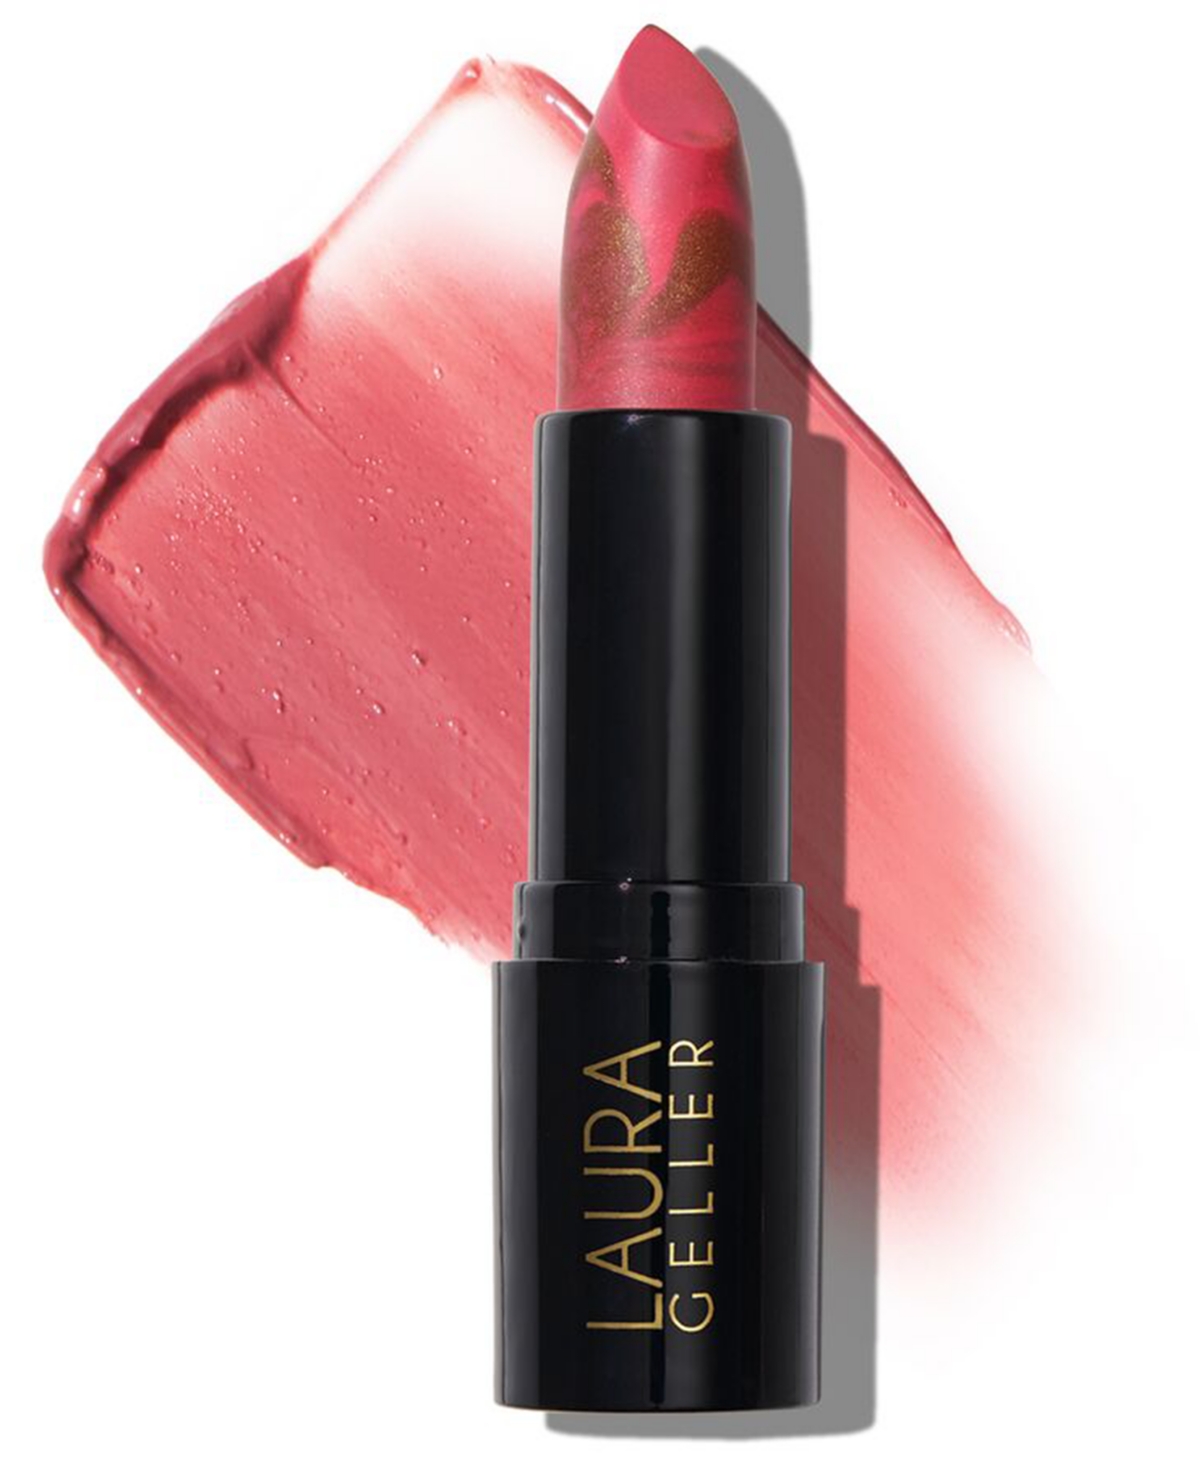 Laura Geller Beauty Italian Marble Lipstick